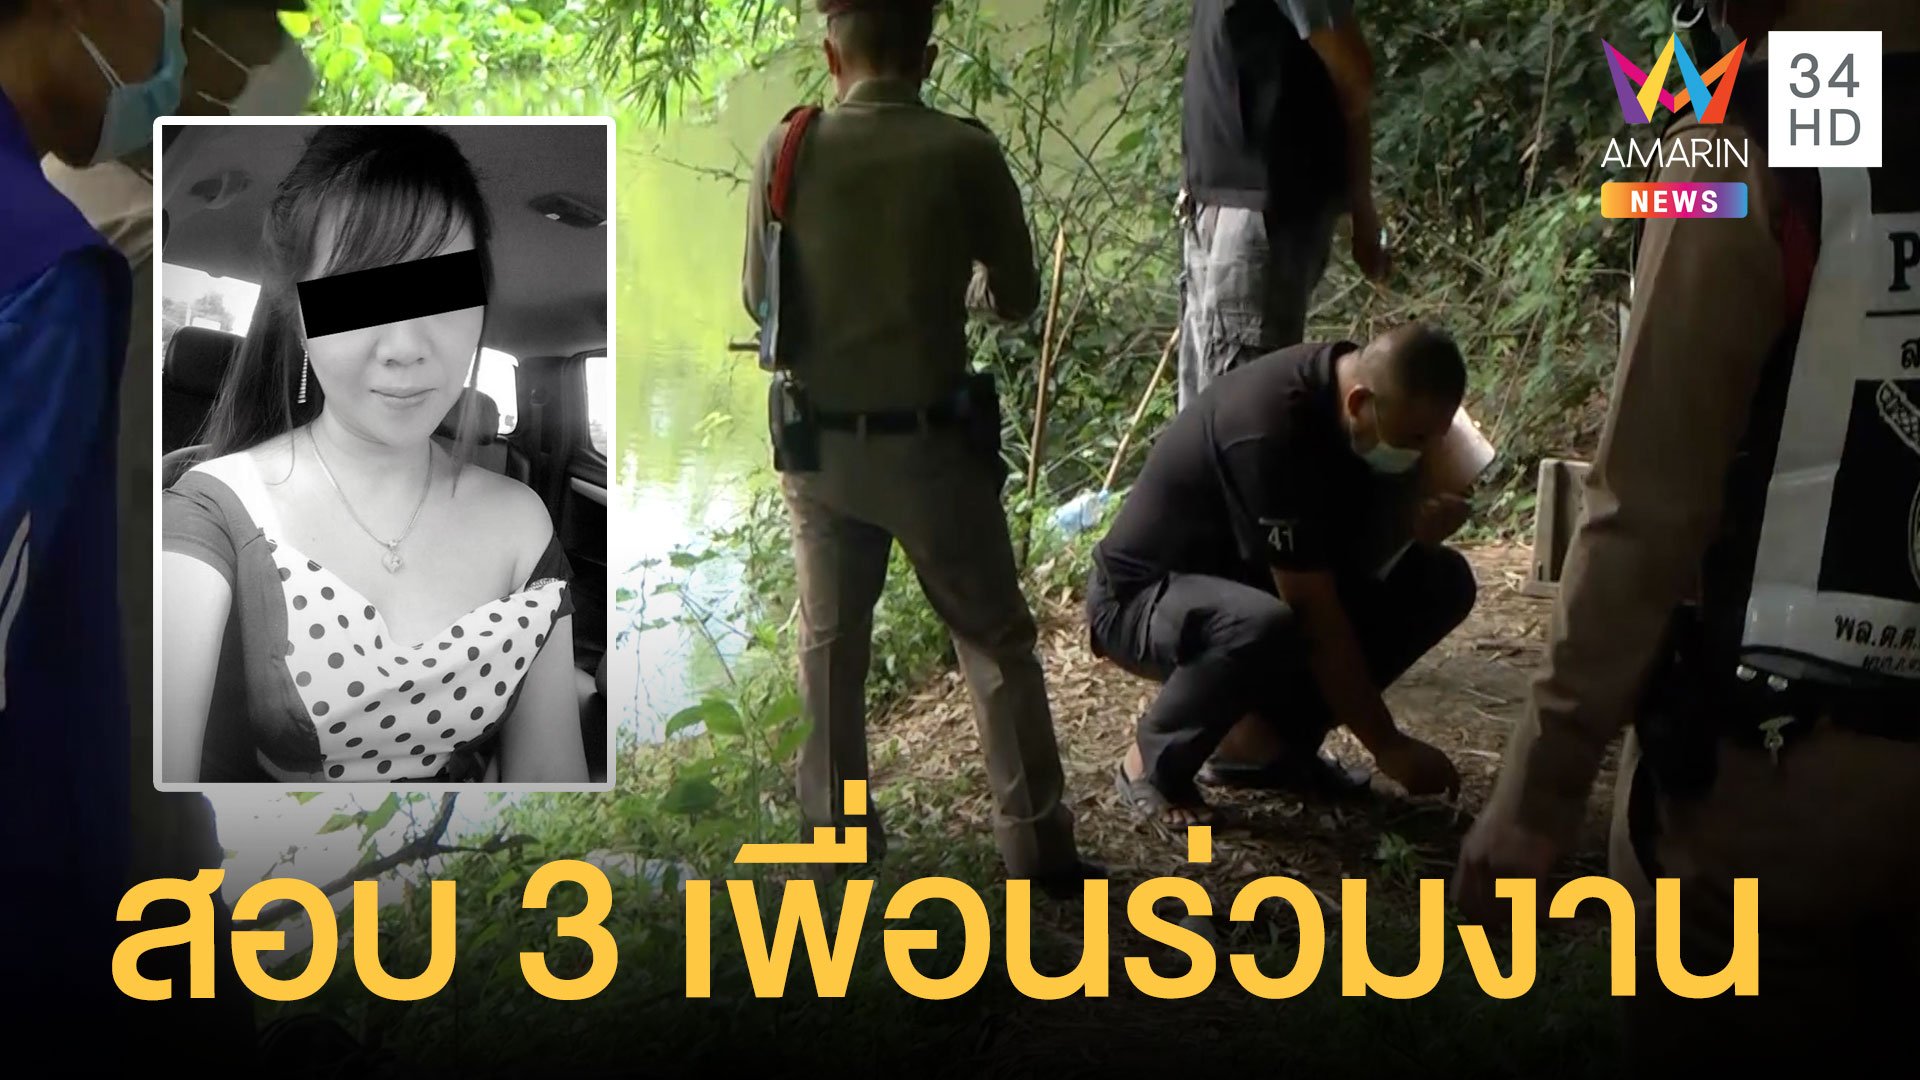 สอบ 3 เพื่อนร่วมงาน ปมสาวถูกฆ่าเปลือยทิ้งคลอง  | ข่าวเที่ยงอมรินทร์ | 28 ก.ค. 64 | AMARIN TVHD34